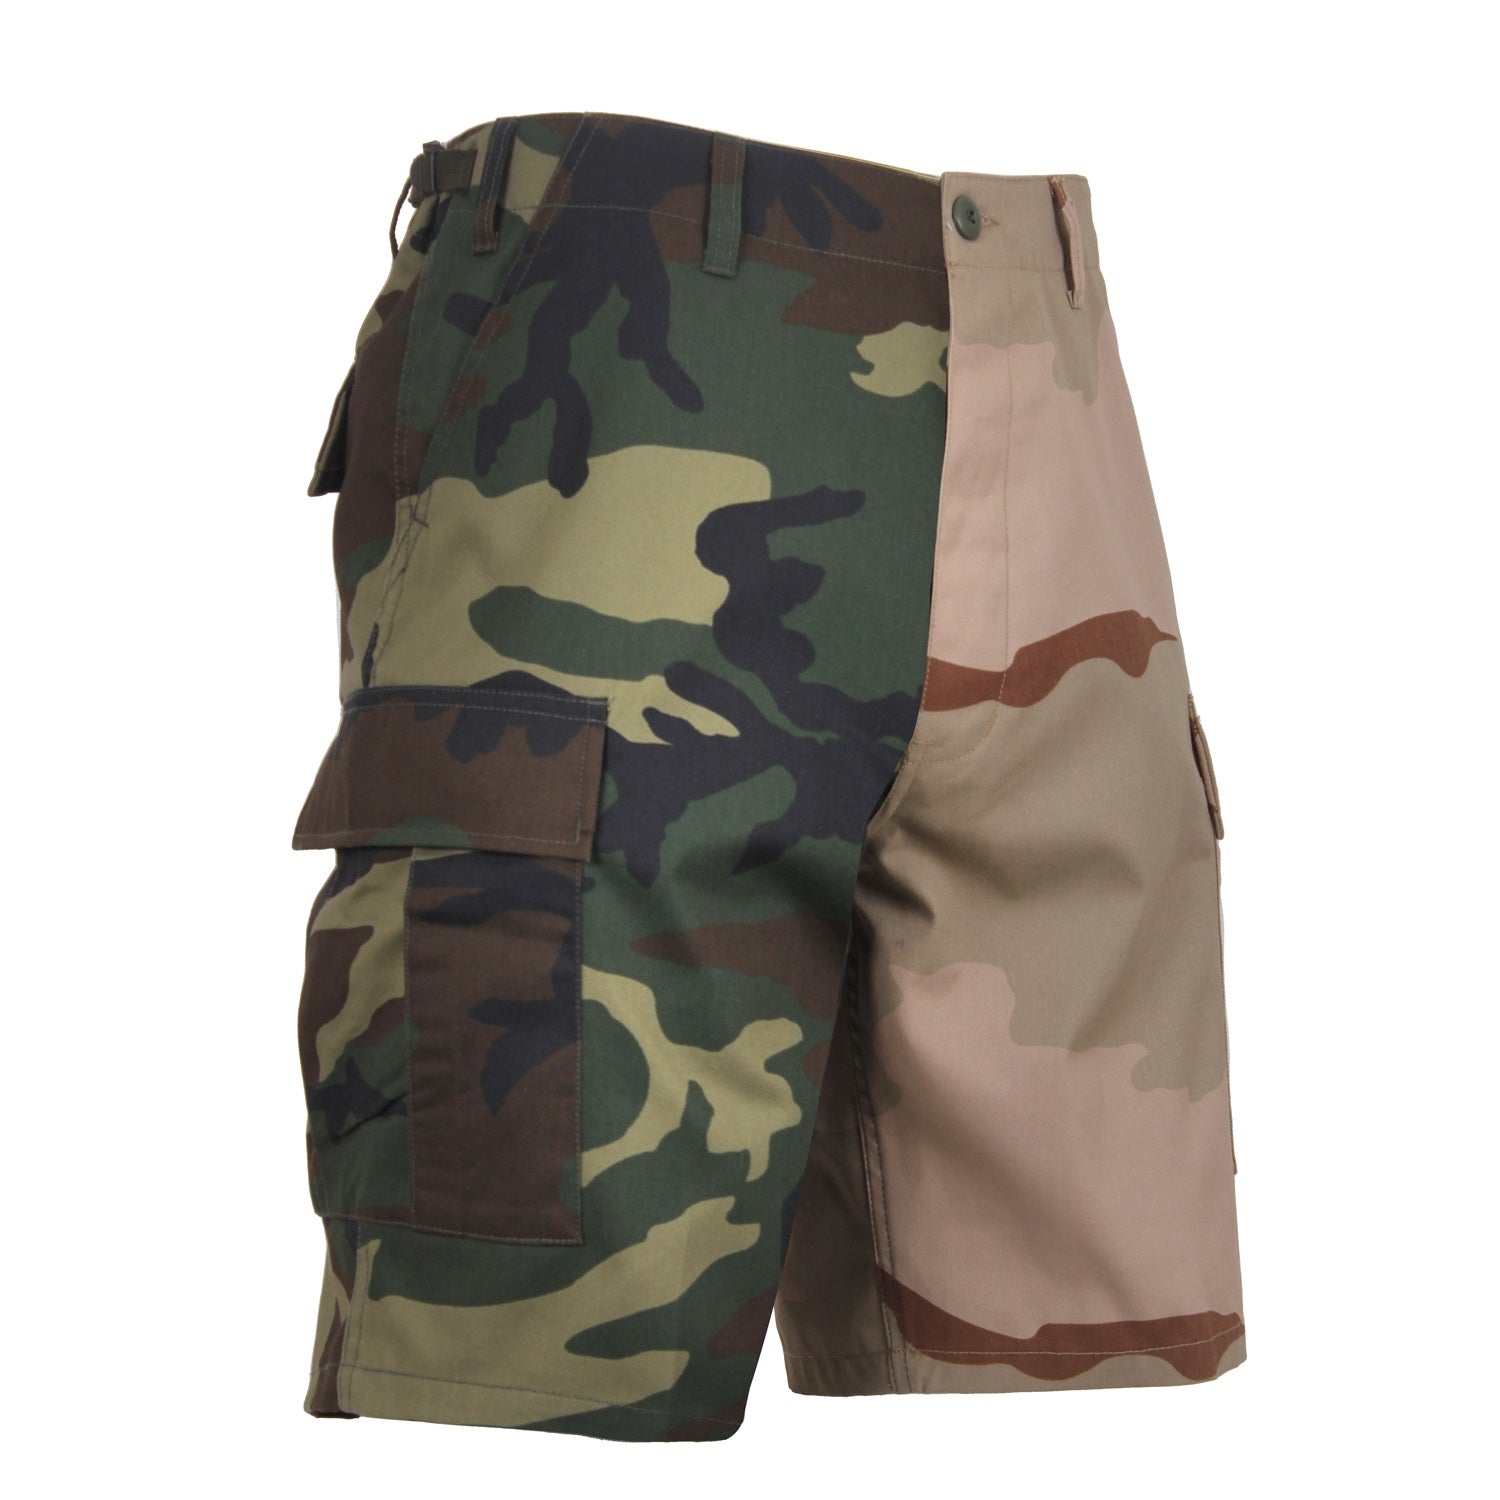 Two-Tone Camo BDU Shorts - CLOSEOUT!